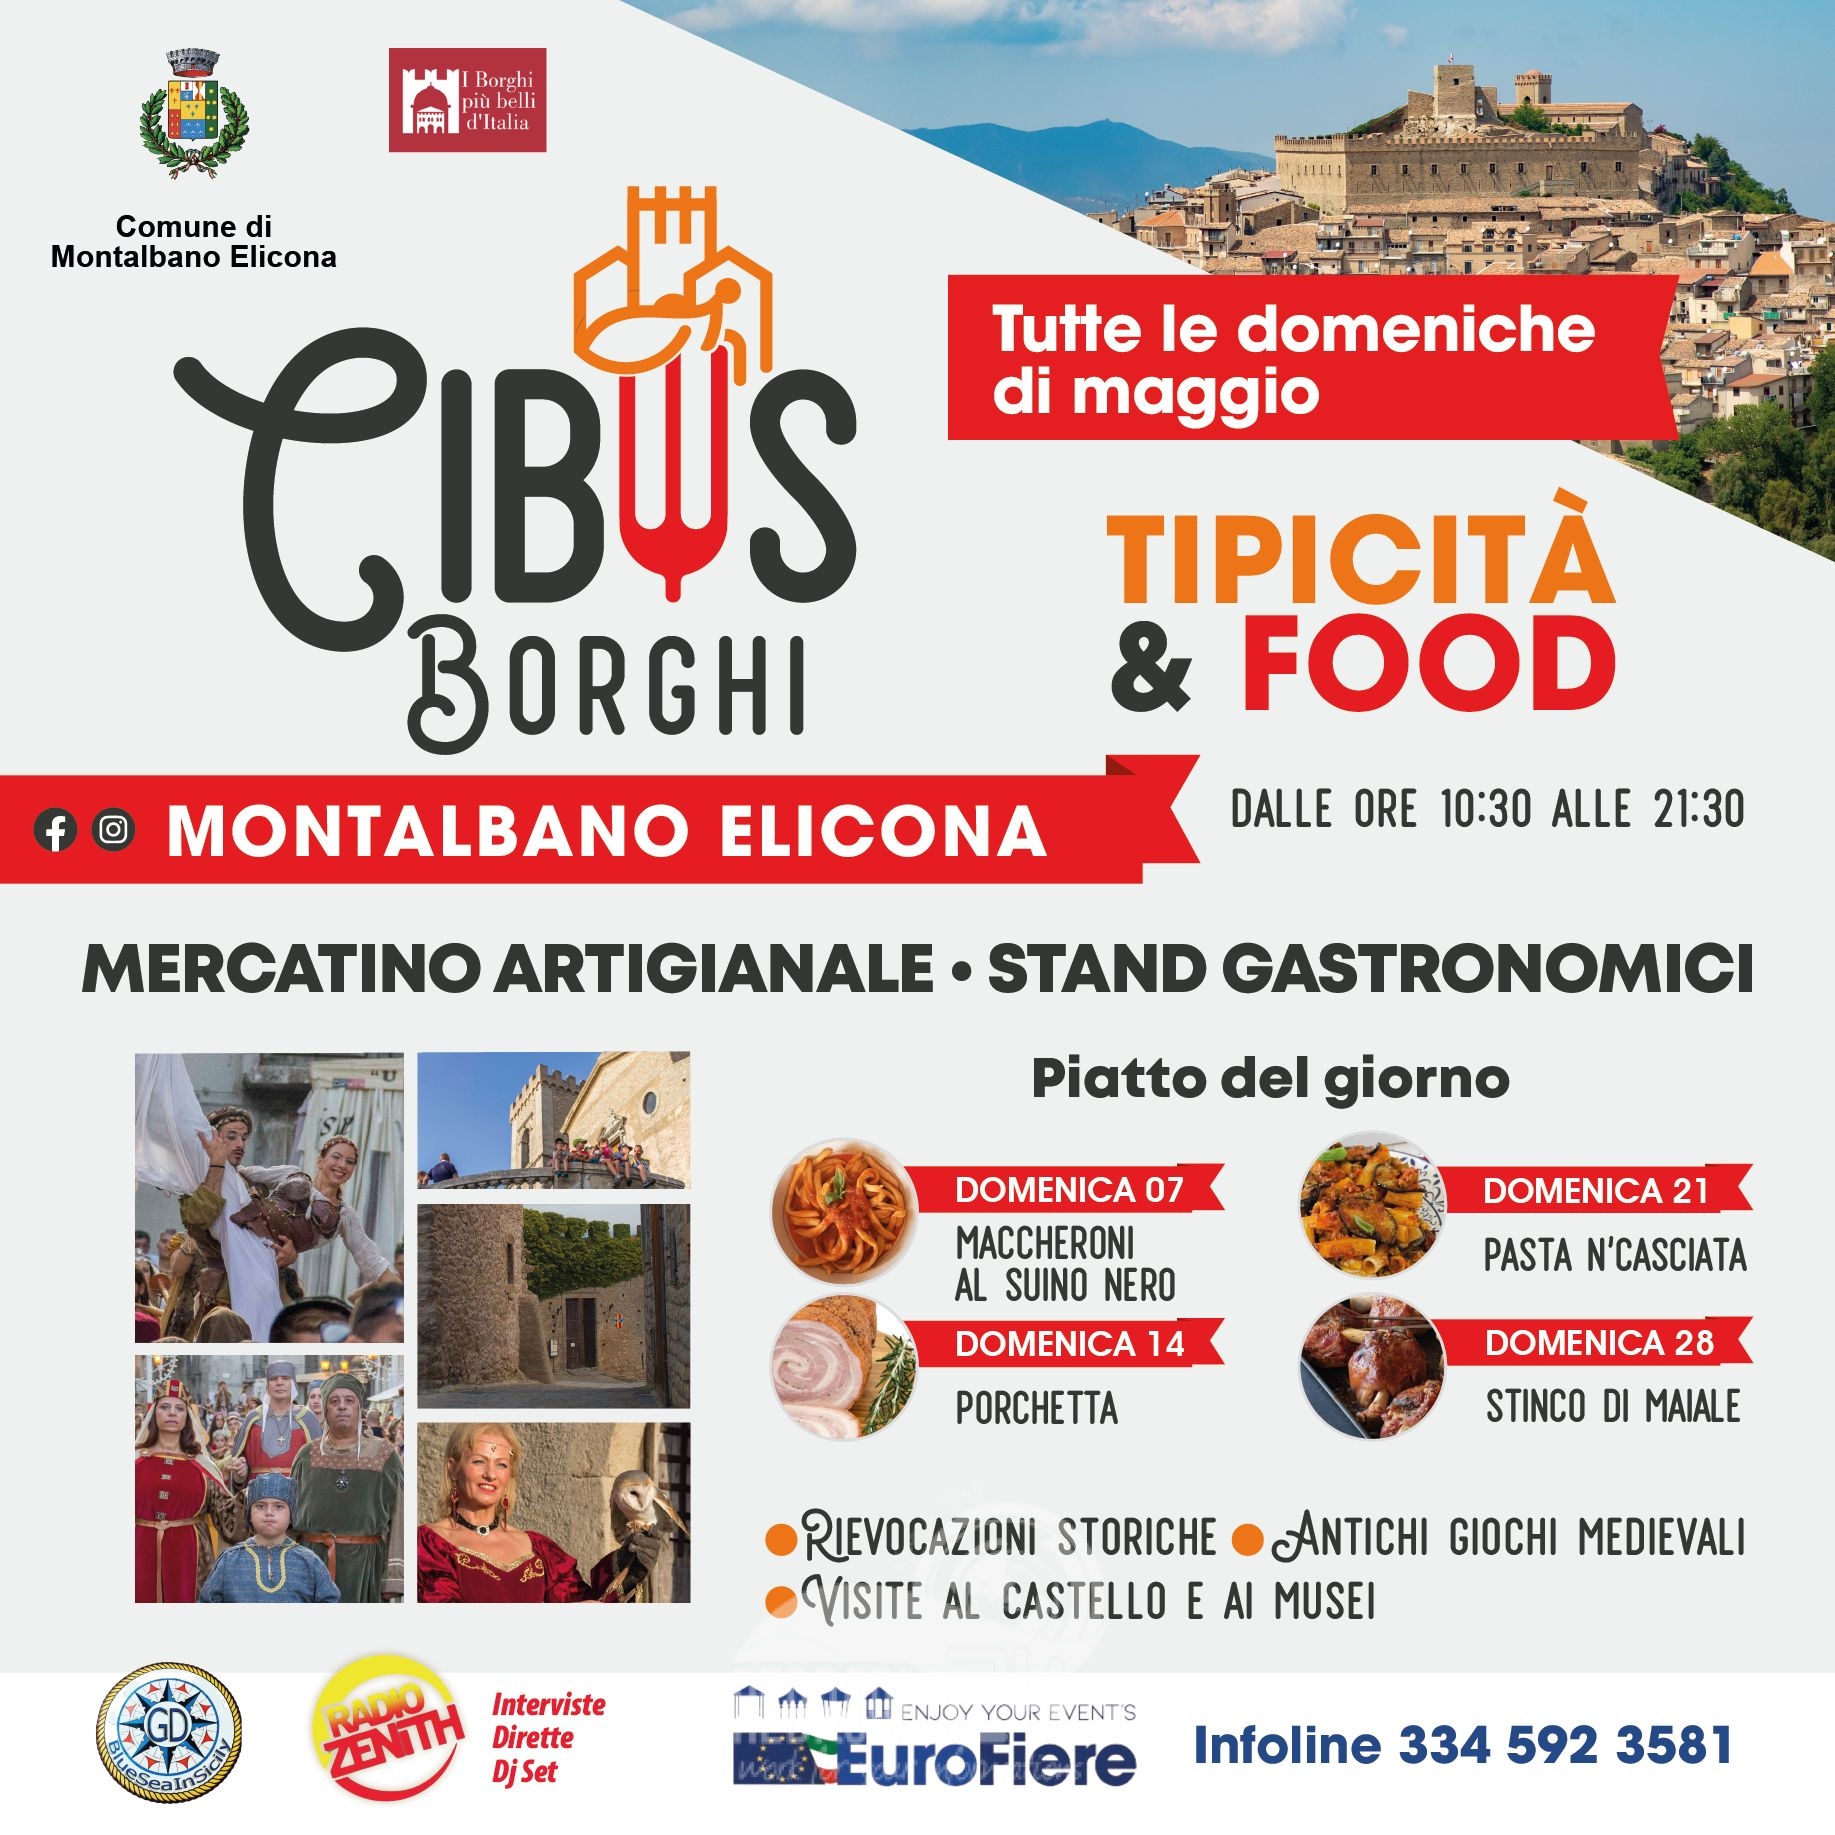 Montalbano Elicona – Maggio in festa: al via “Cibus Borghi”, stand gastronomici, mercatino artigianale, giochi medievali e intrattenimento.